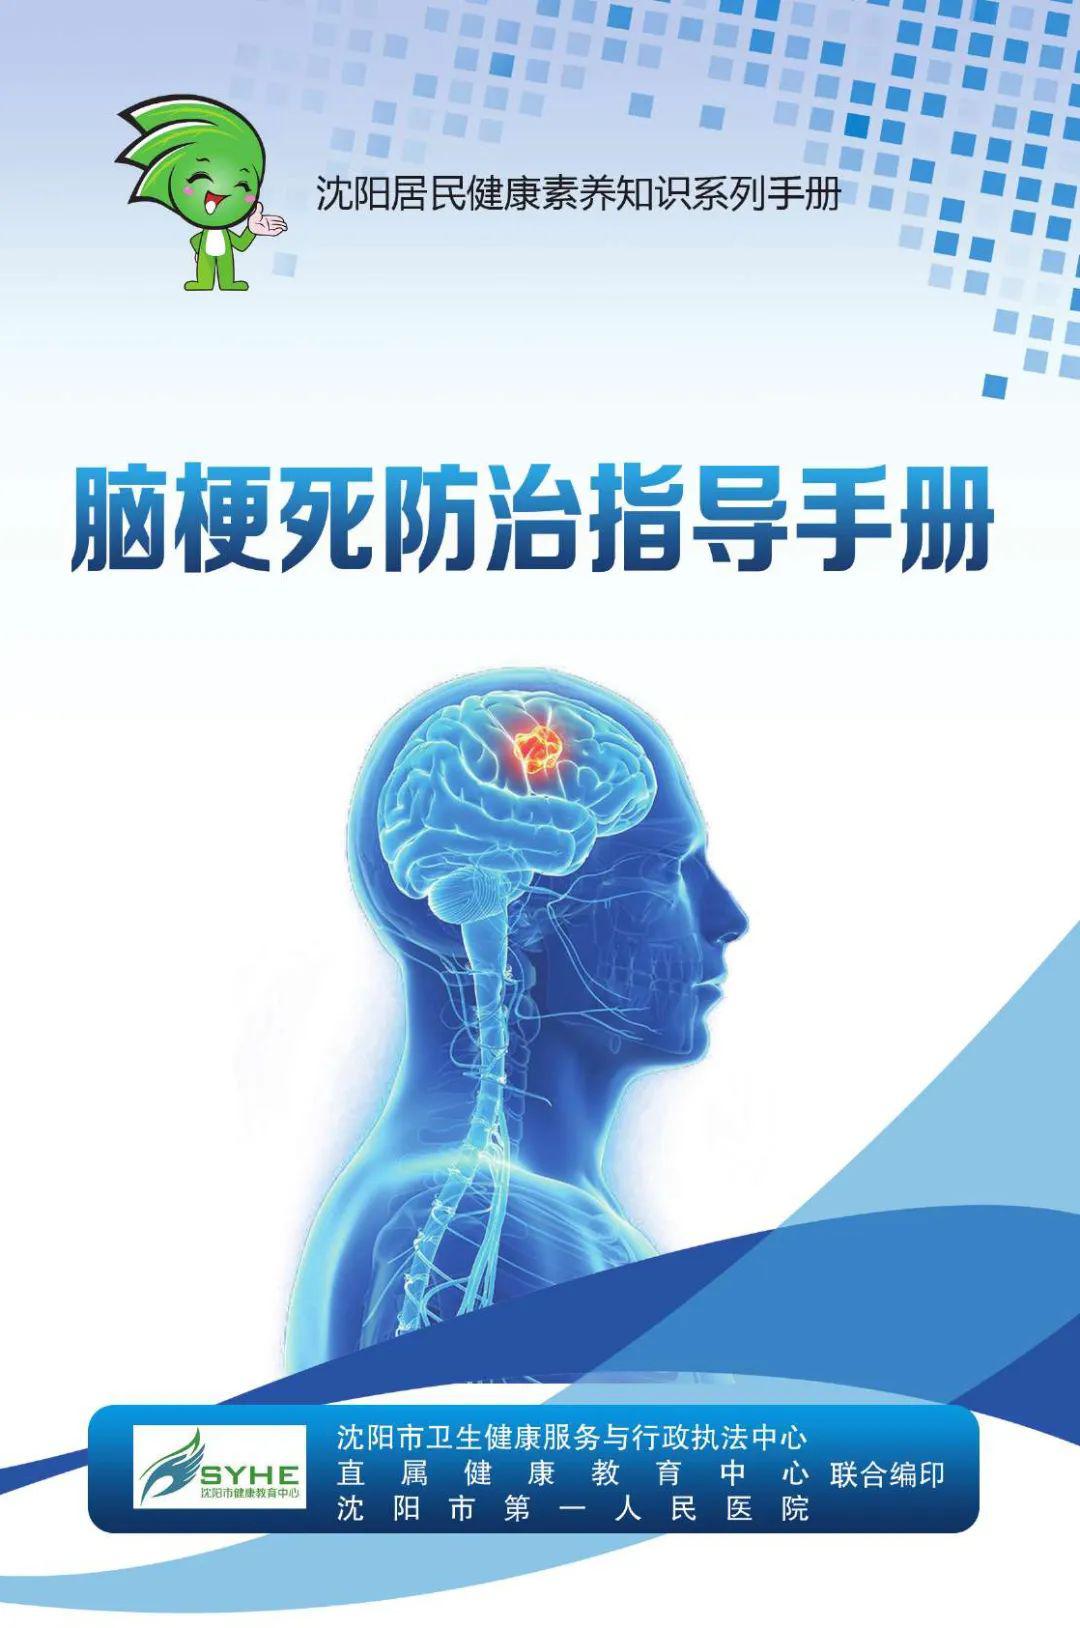 神经内科专家：静脉溶栓是治疗急性脑梗死超早期最有效手段-中国科技网